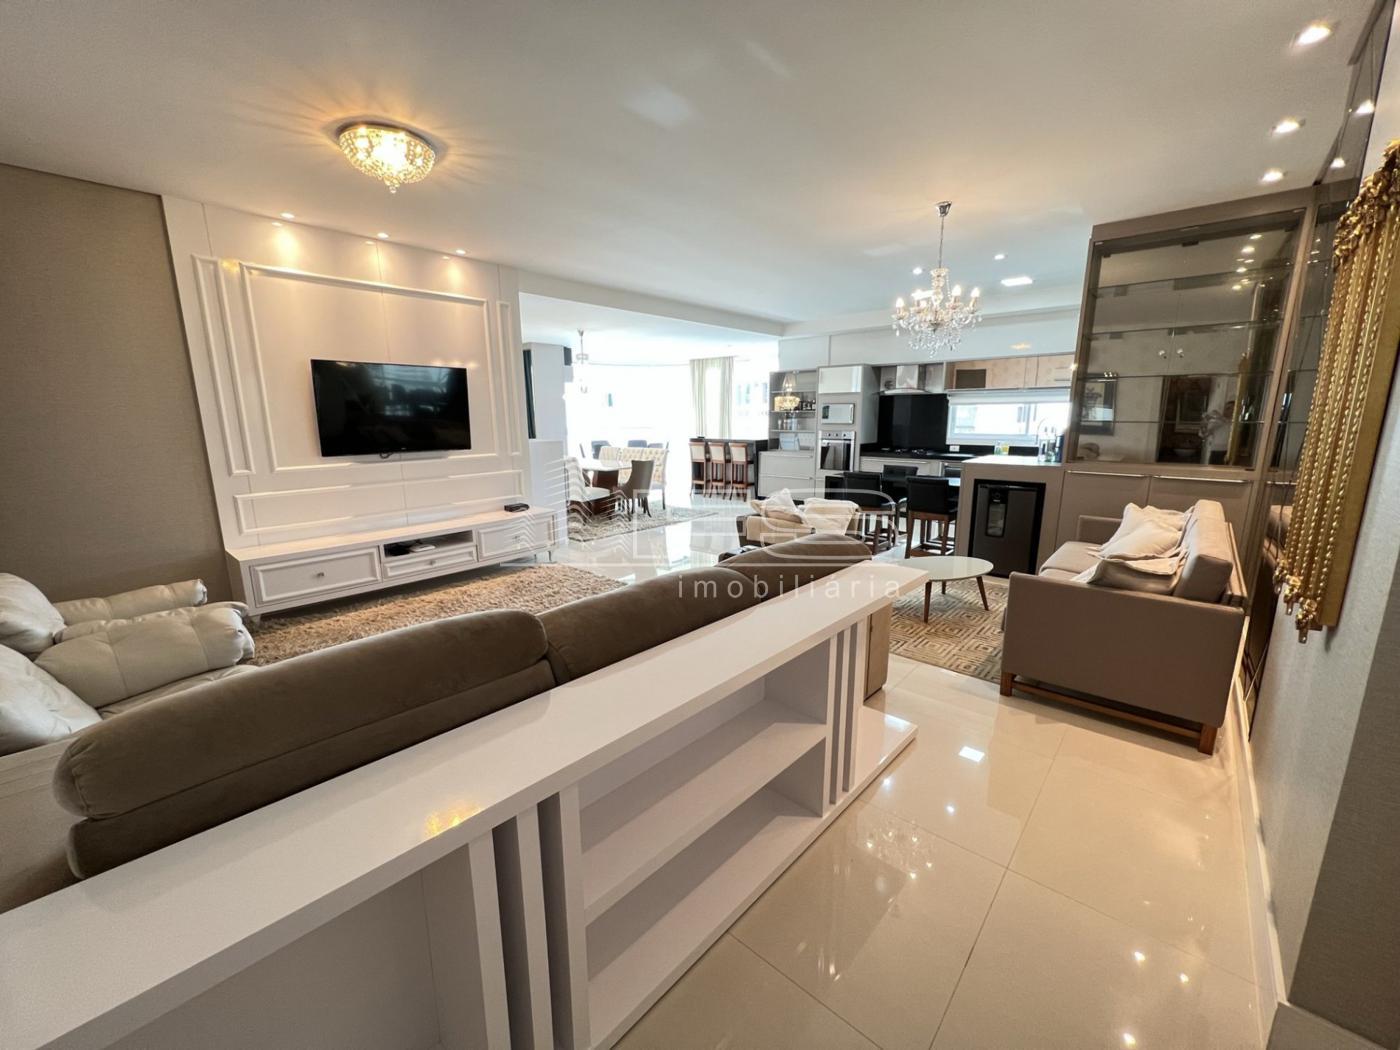 Apartamento com 4 Dormitórios à venda, 190 m² por R$ 2.800.000,00